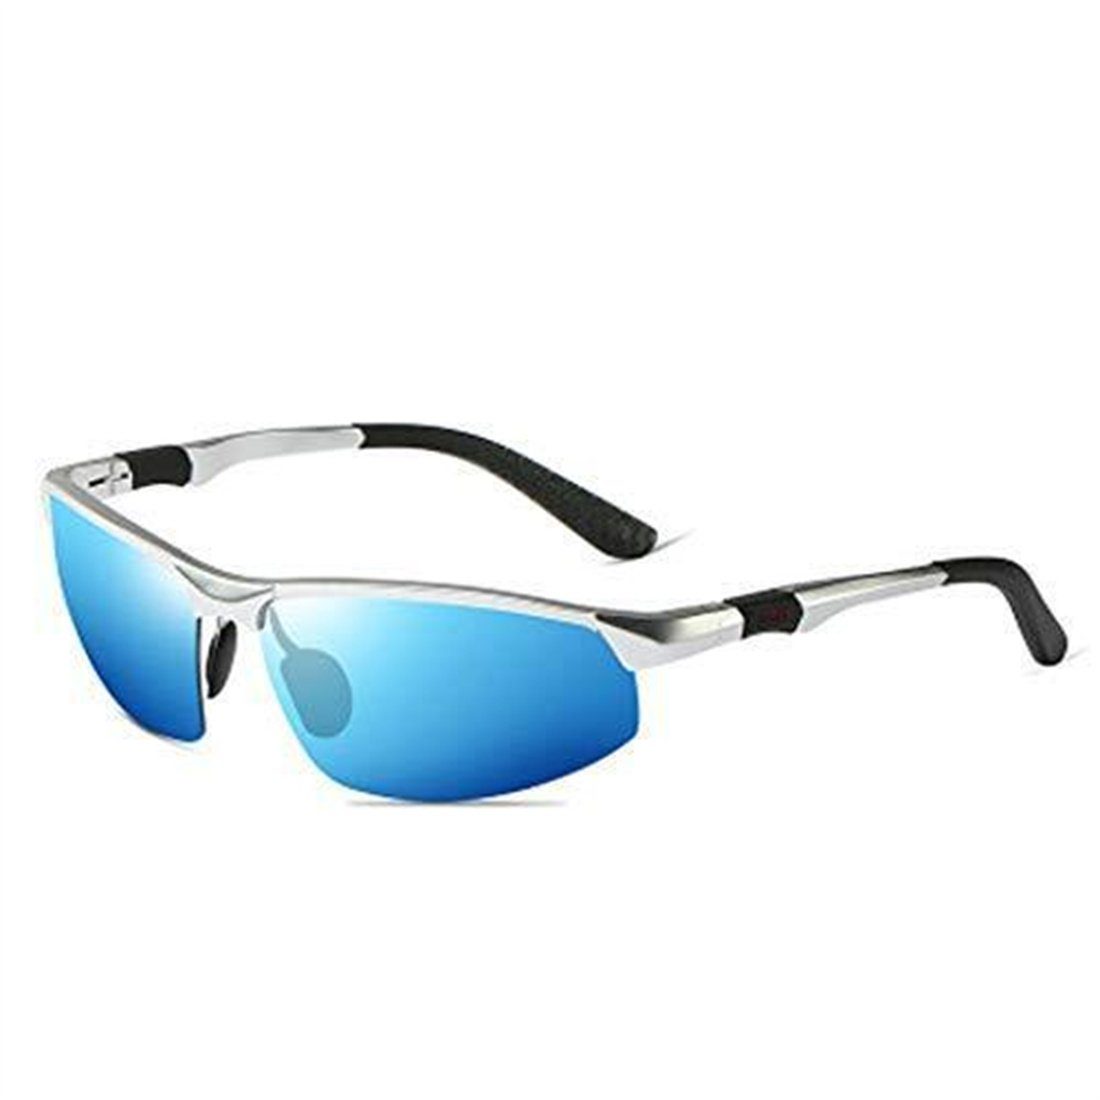 Beliebt & neu! DÖRÖY Sonnenbrille Herren Sonnenbrille Polarisiert UV400 Pilotenbrille HD Schutz Fahren